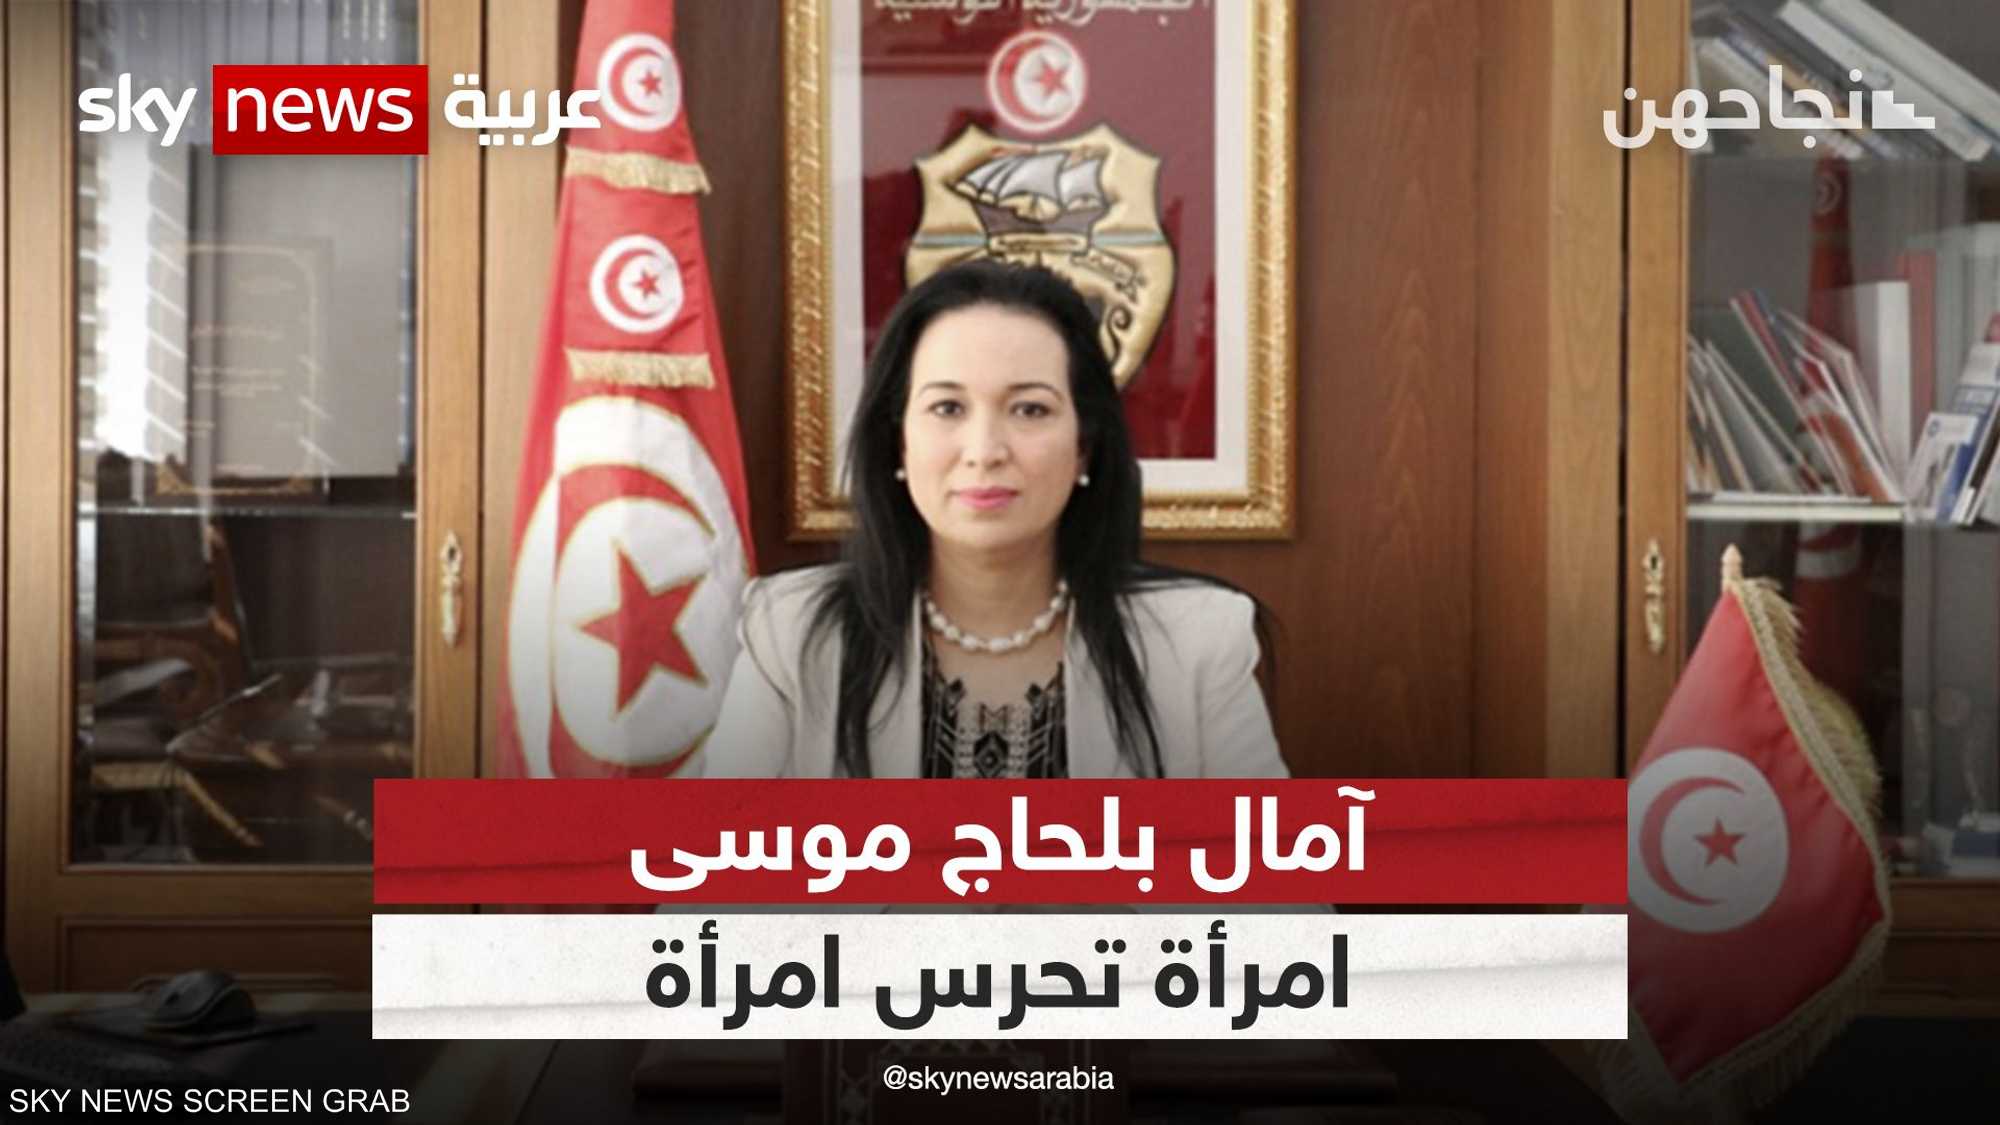 بين الشعر والعمل العام.. حوار خاص مع وزيرة المرأة التونسية